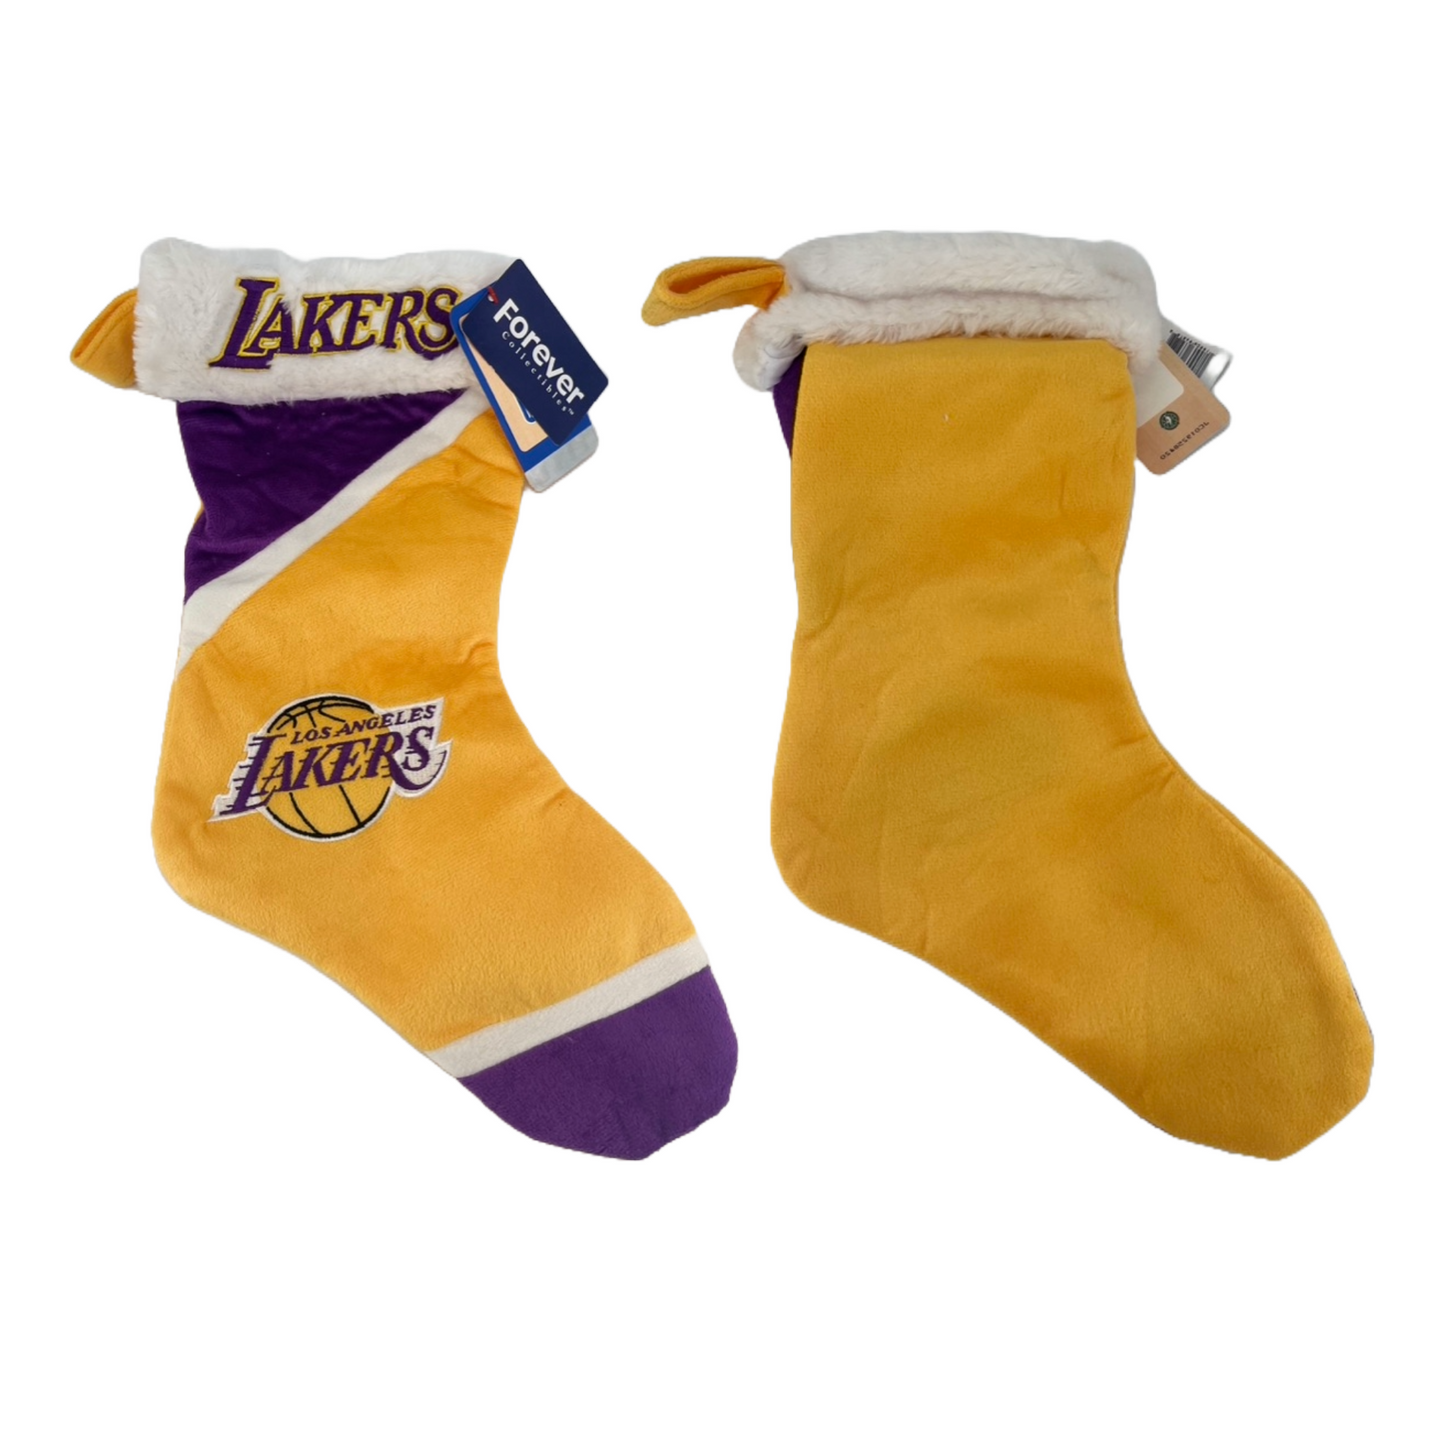 Medias navideñas de los Lakers - Colorblock 2014 